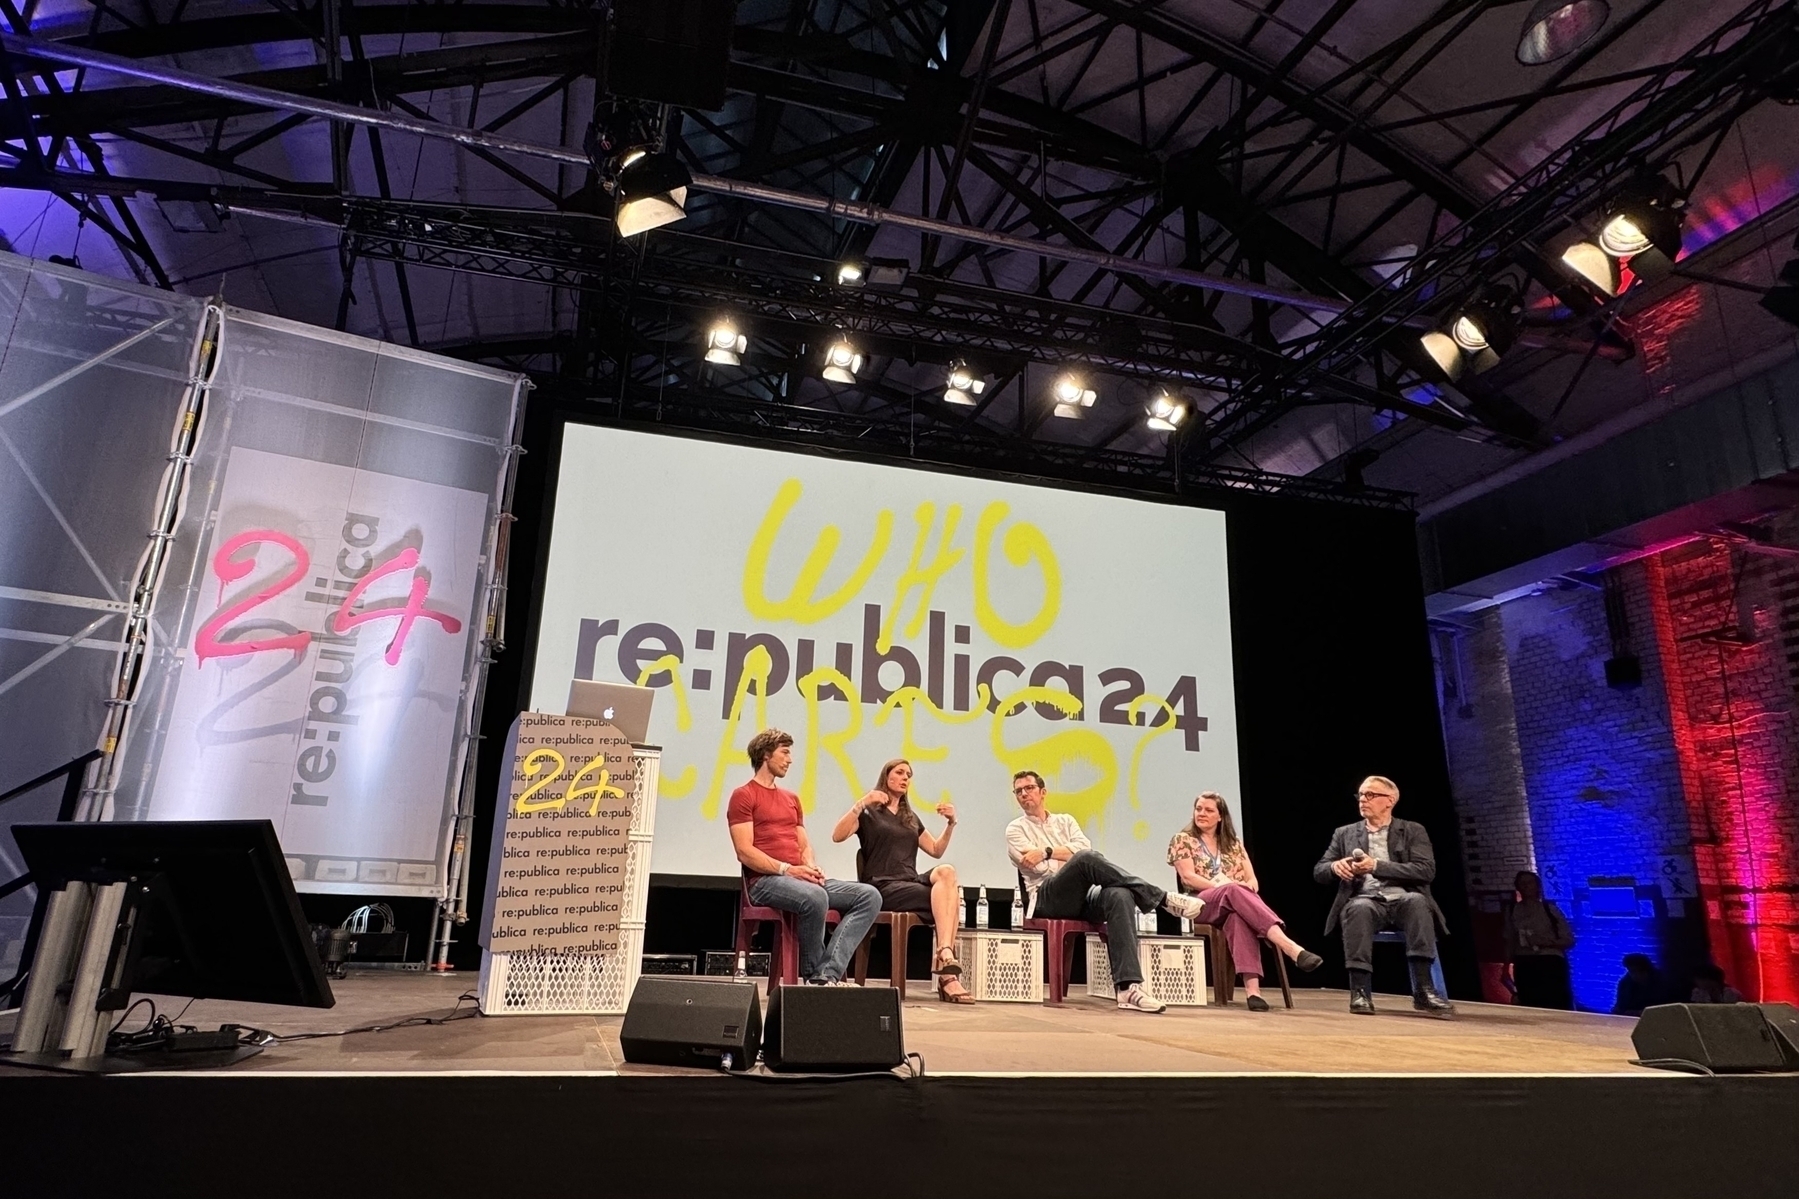 Eine Podiumsdiskussion auf der re:publica 24-Konferenz mit fünf Personen auf der Bühne, einem großen Bildschirm hinter "re:publica 24" und "WHO CARES?" und Bühnenbeleuchtung über dem Kopf.